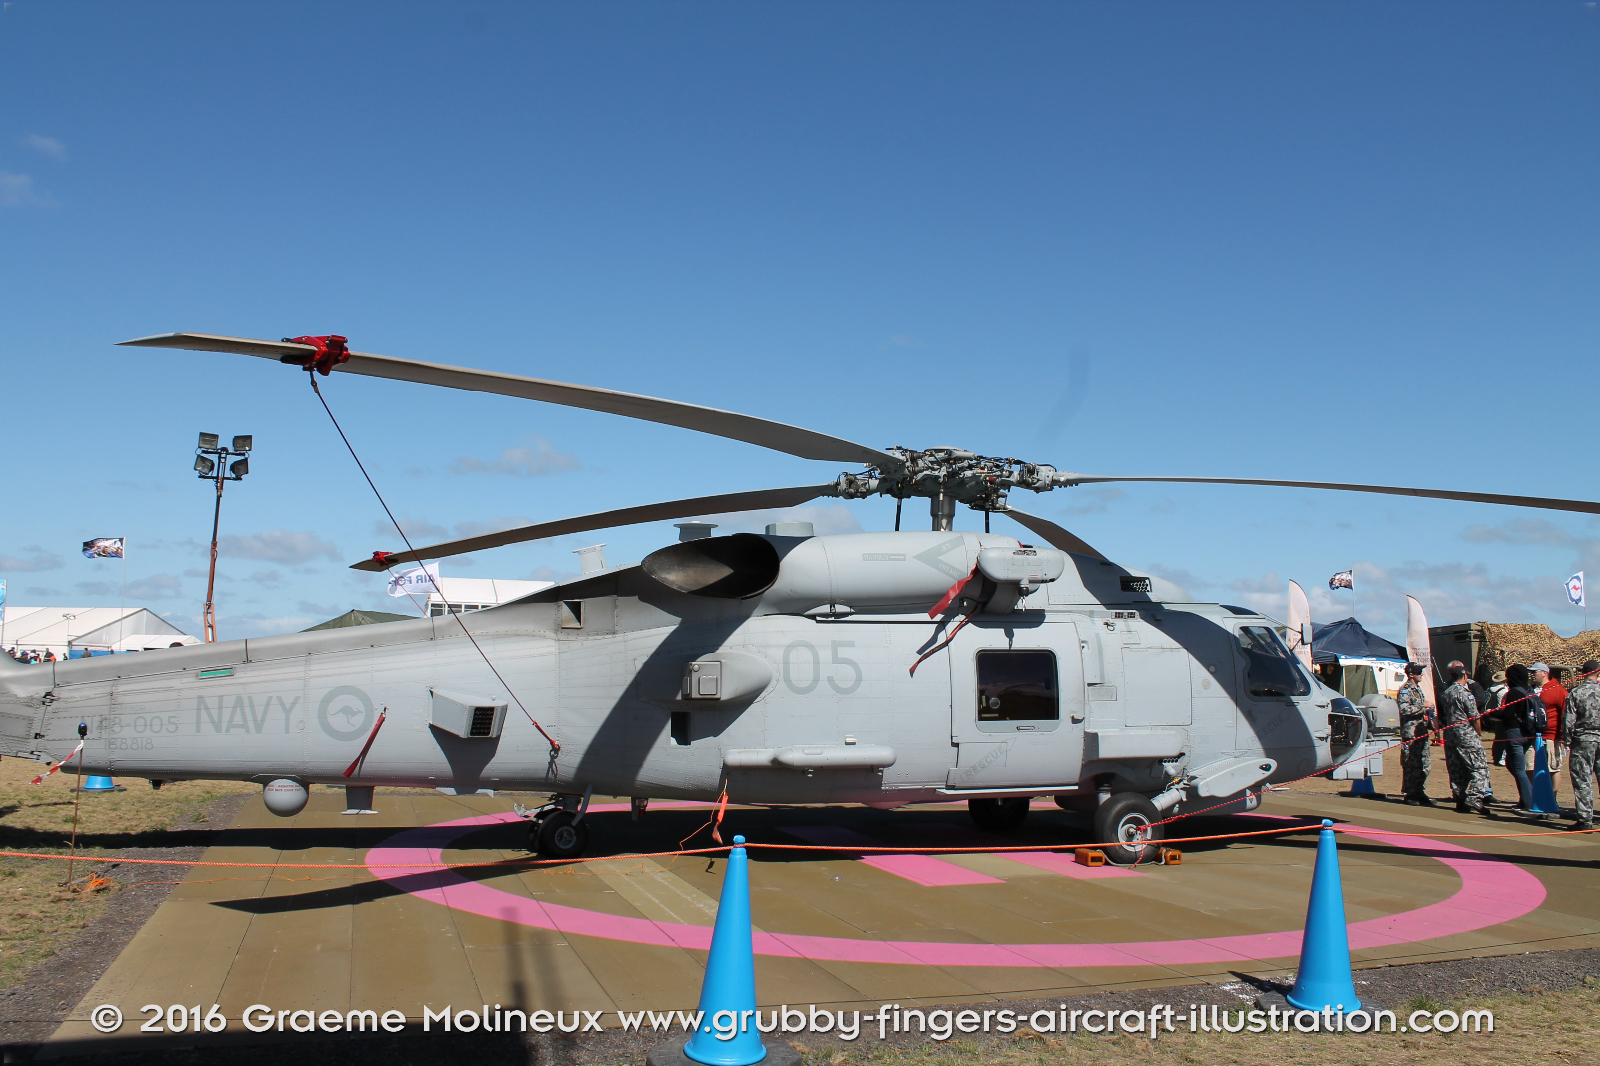 SIKORSKY_MH-60R_Seahawk_N48-005_Avalon_2015_03_GrubbyFingers